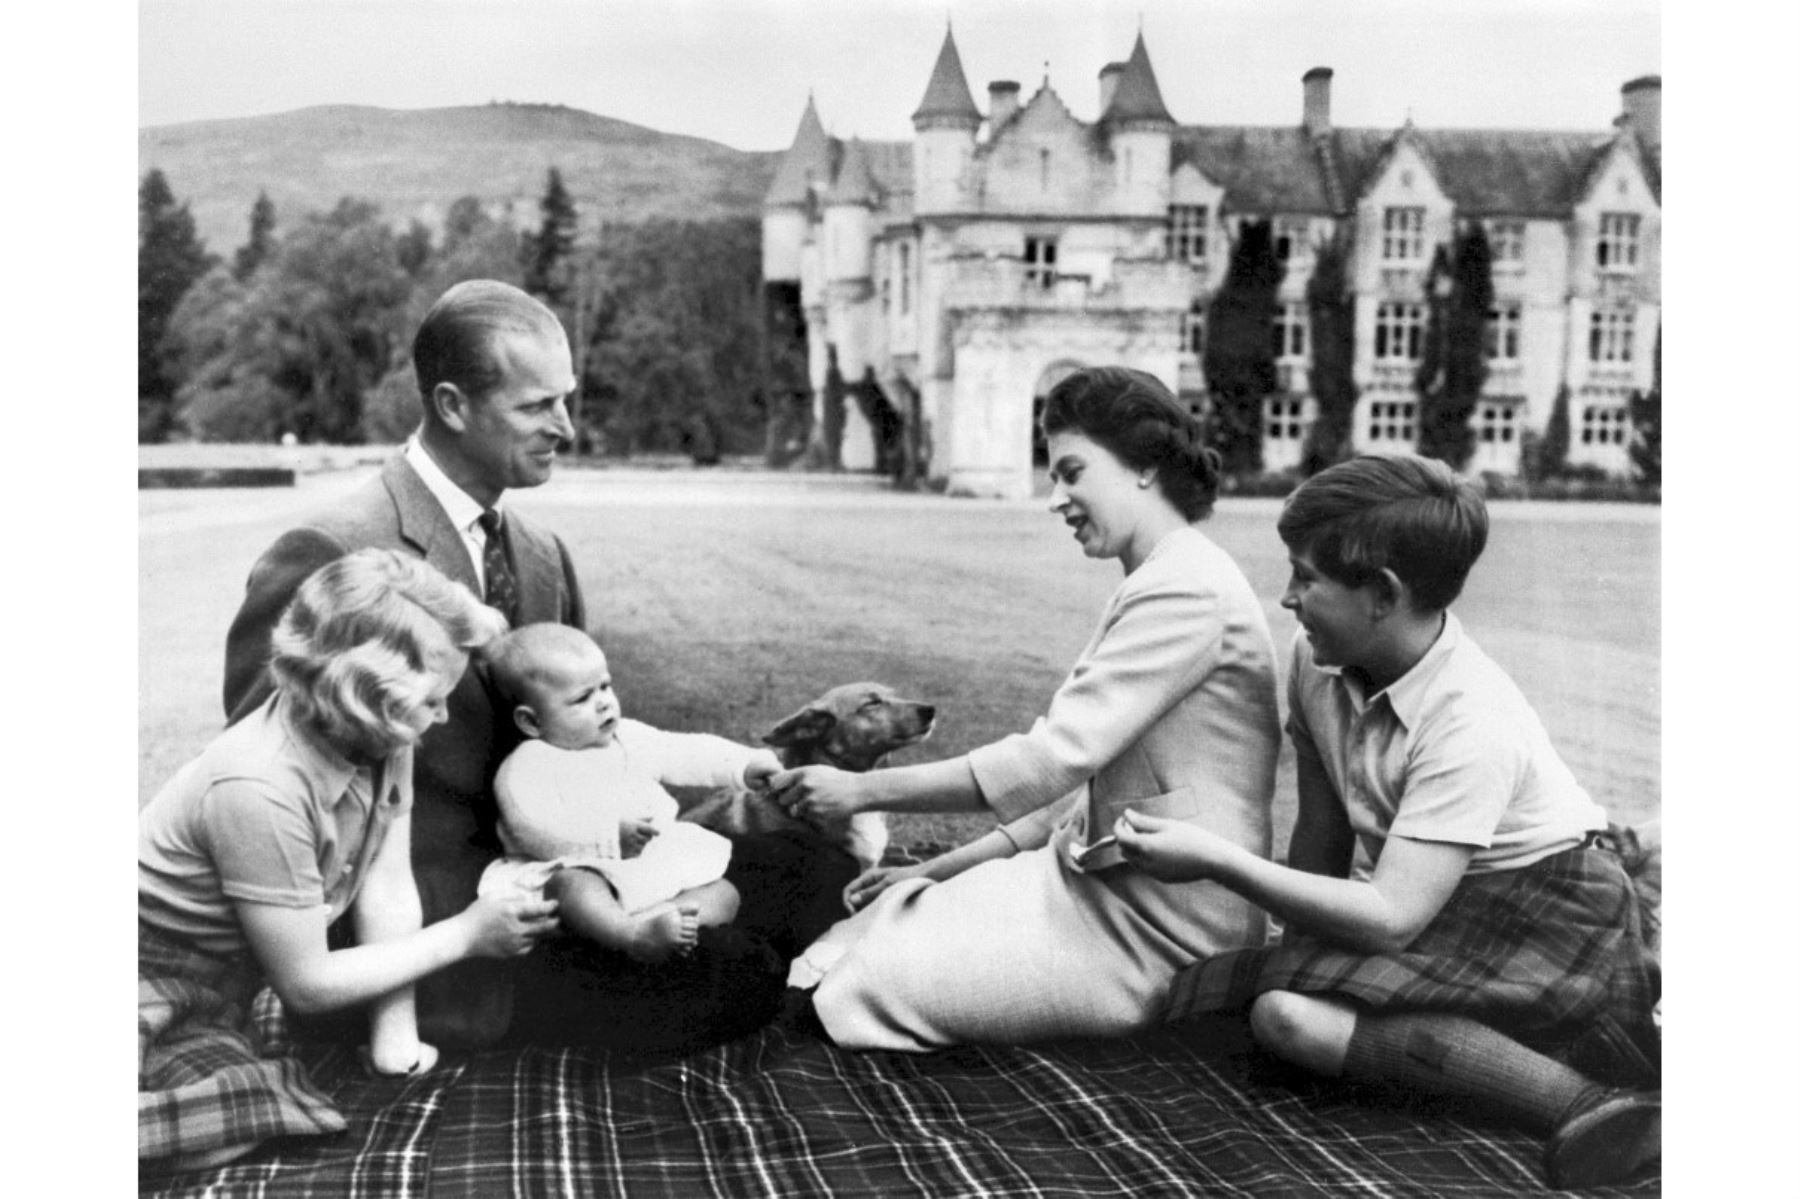 La reina Isabel II de Gran Bretaña (2R), el Príncipe Felipe de Gran Bretaña, Duque de Edimburgo (2L) y sus tres hijos, el Príncipe Carlos (R), la Princesa Ana (L) y el Príncipe Andrew (3L) posan en los terrenos del Castillo de Balmoral, cerca del pueblo de Crathie en Aberdeenshire, 9 de septiembre de 1960. Foto: AFP